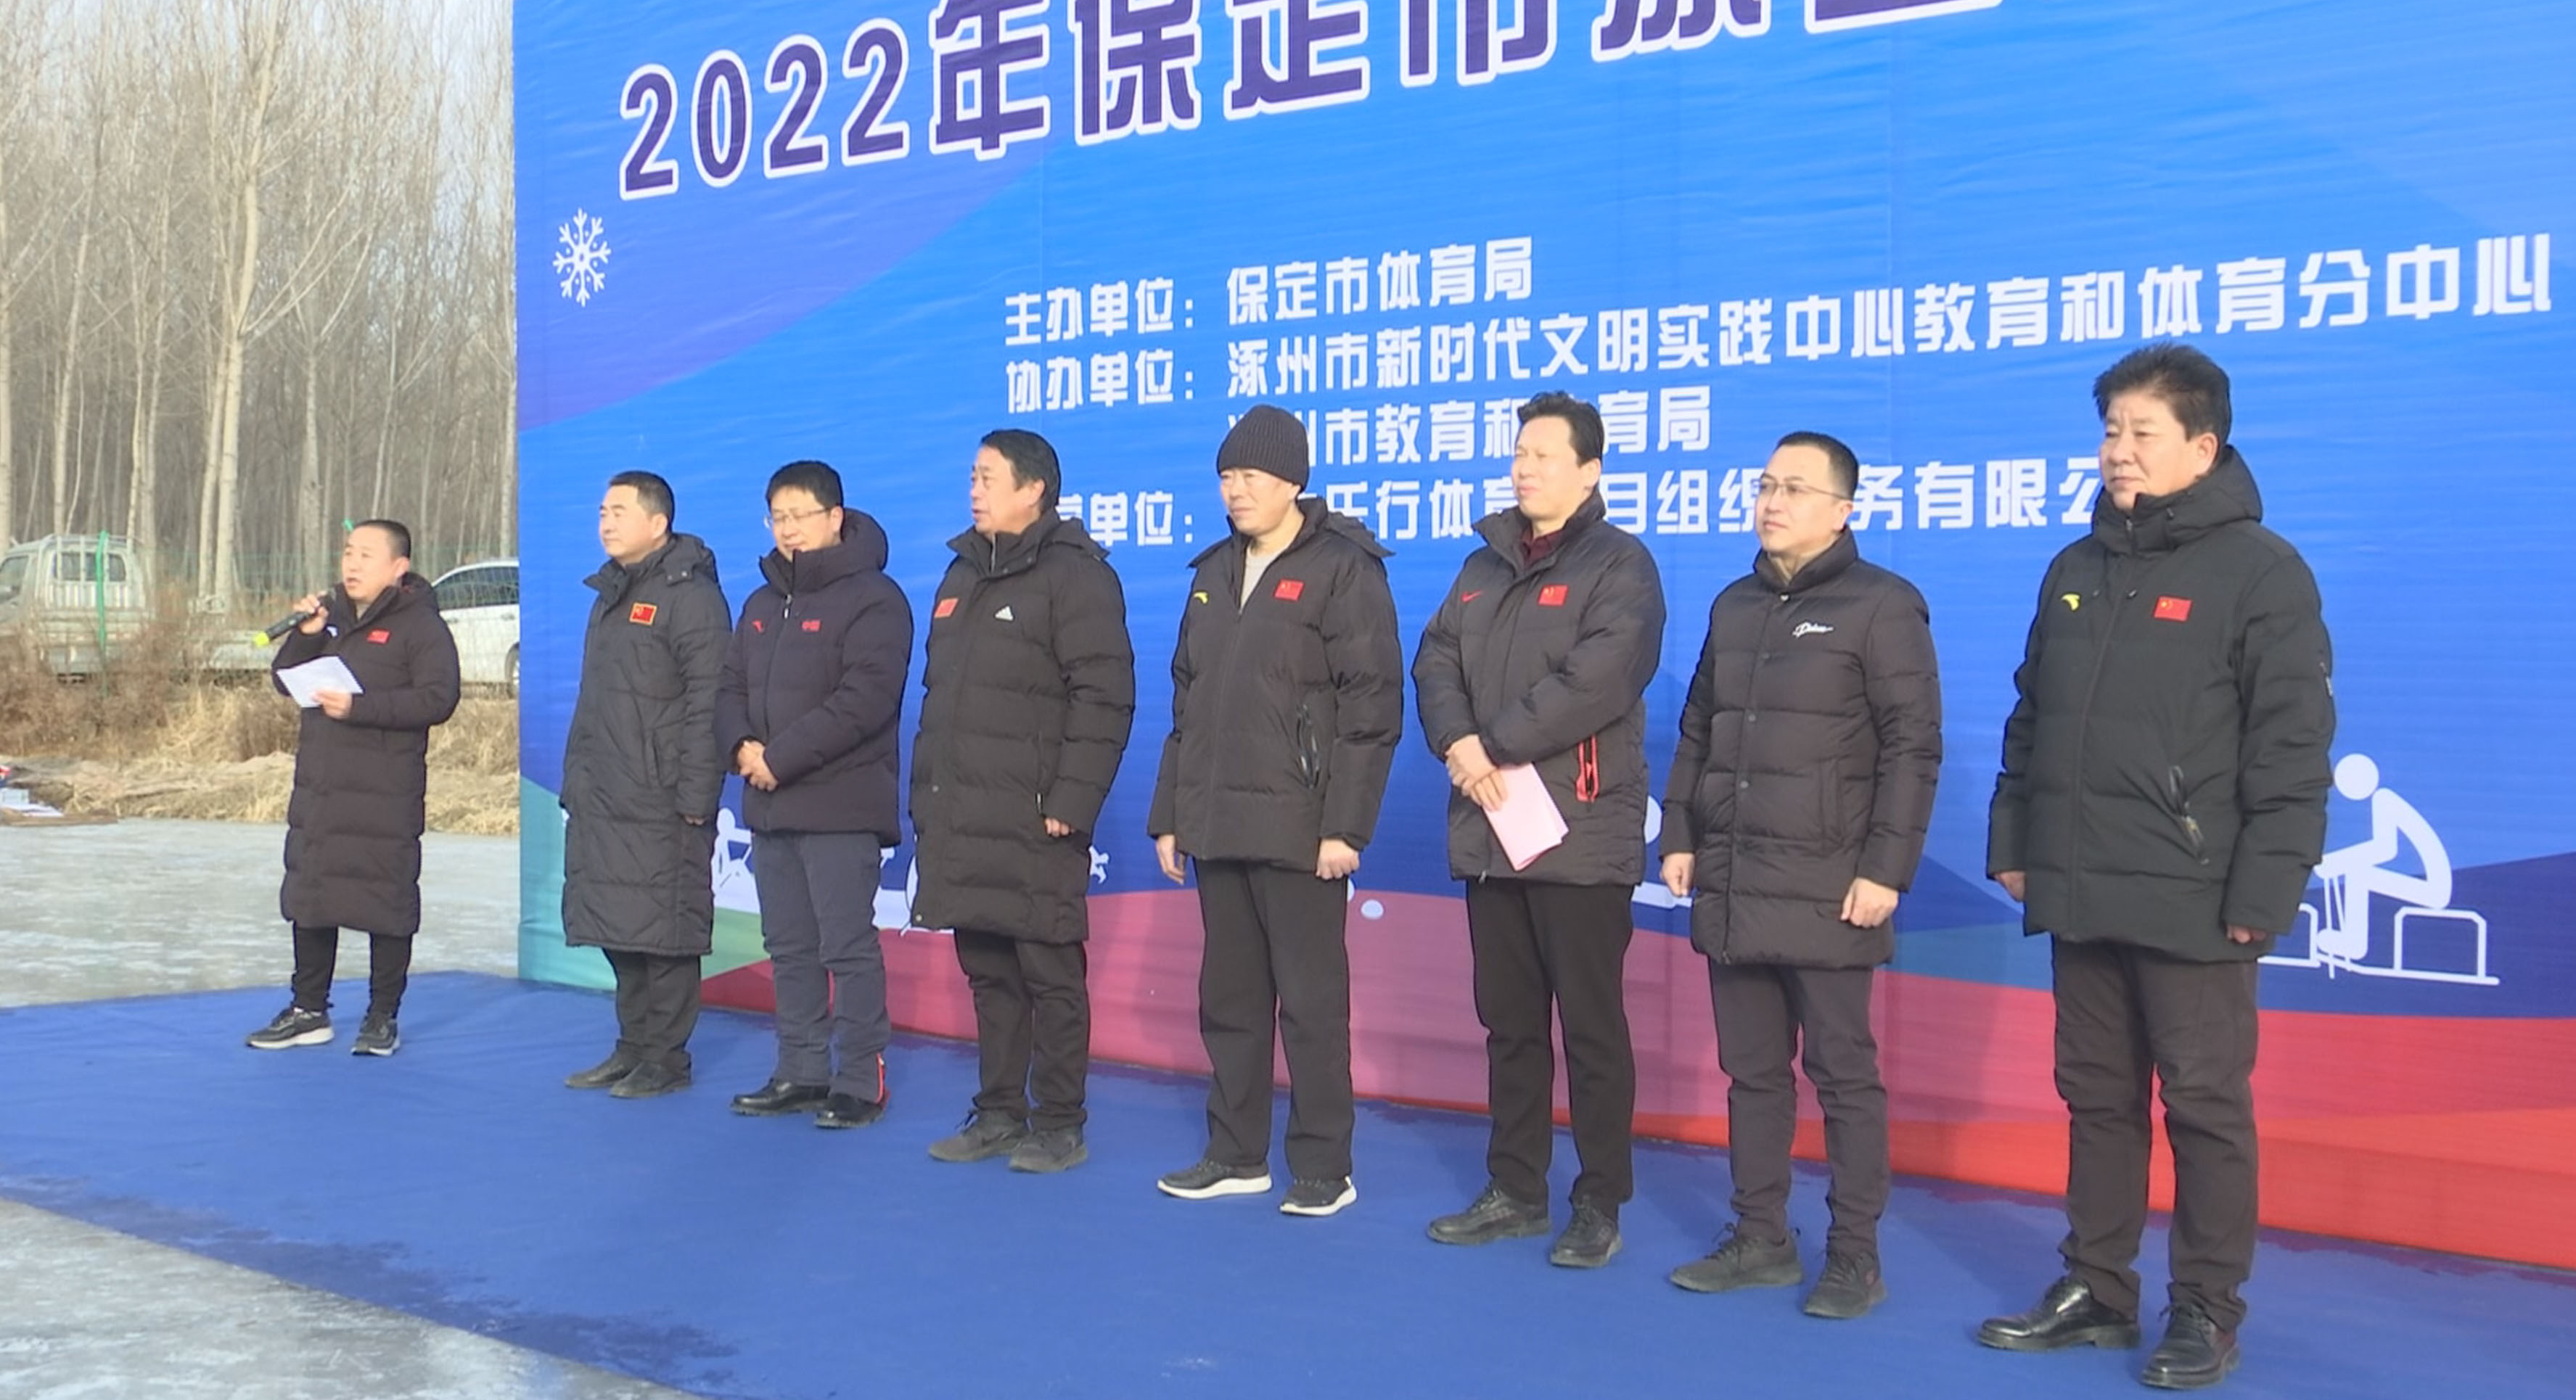 助力冬奥 | 涿州举办冰上趣味运动会 与冬奥同行